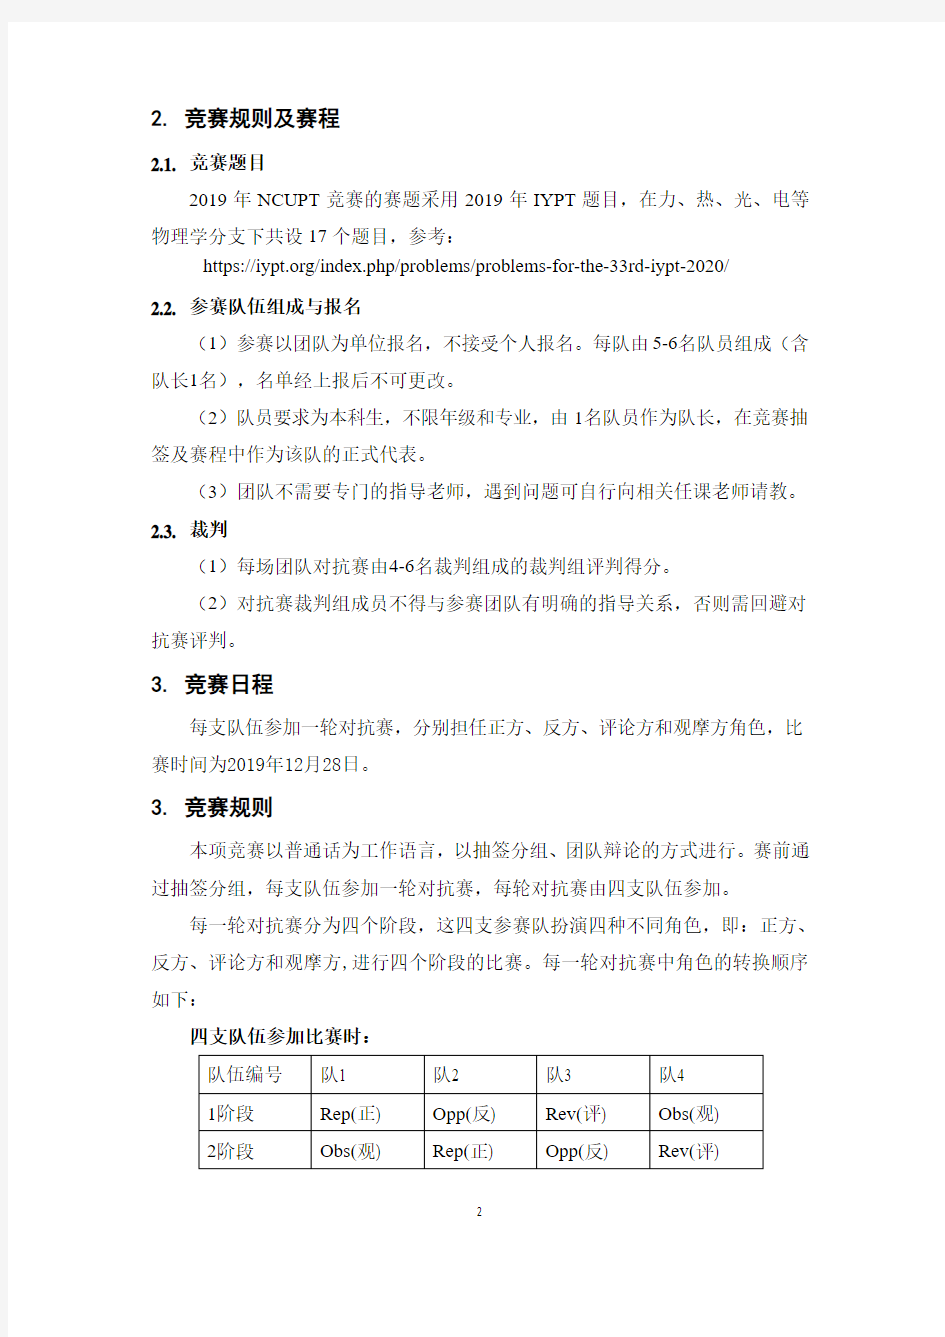 南昌大学物理学术竞赛(NCUPT)简介及比赛规则